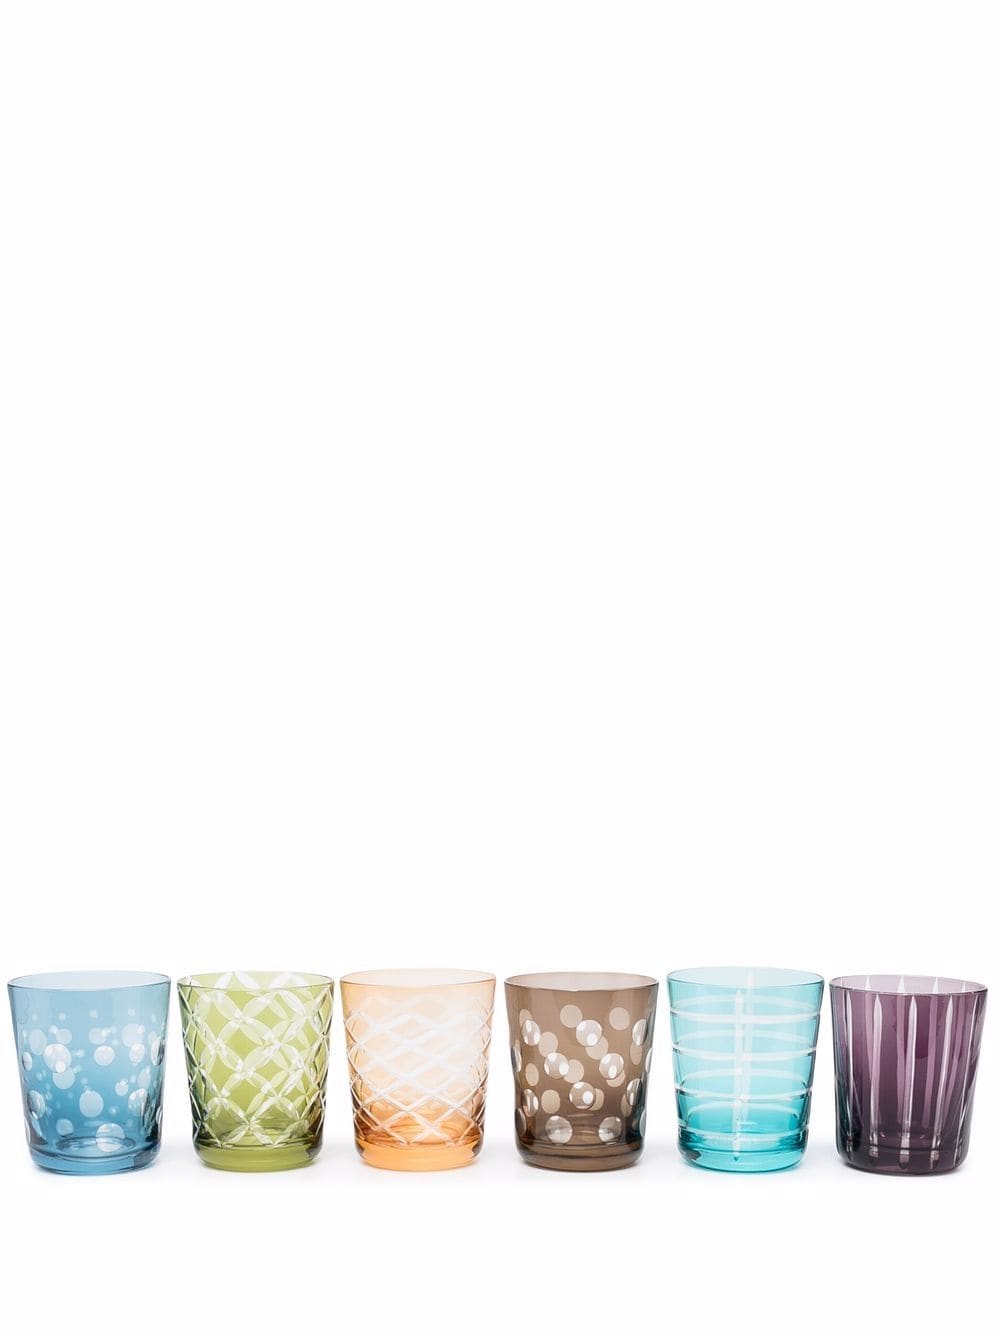 фото Pols potten набор из шести разноцветных стаканов